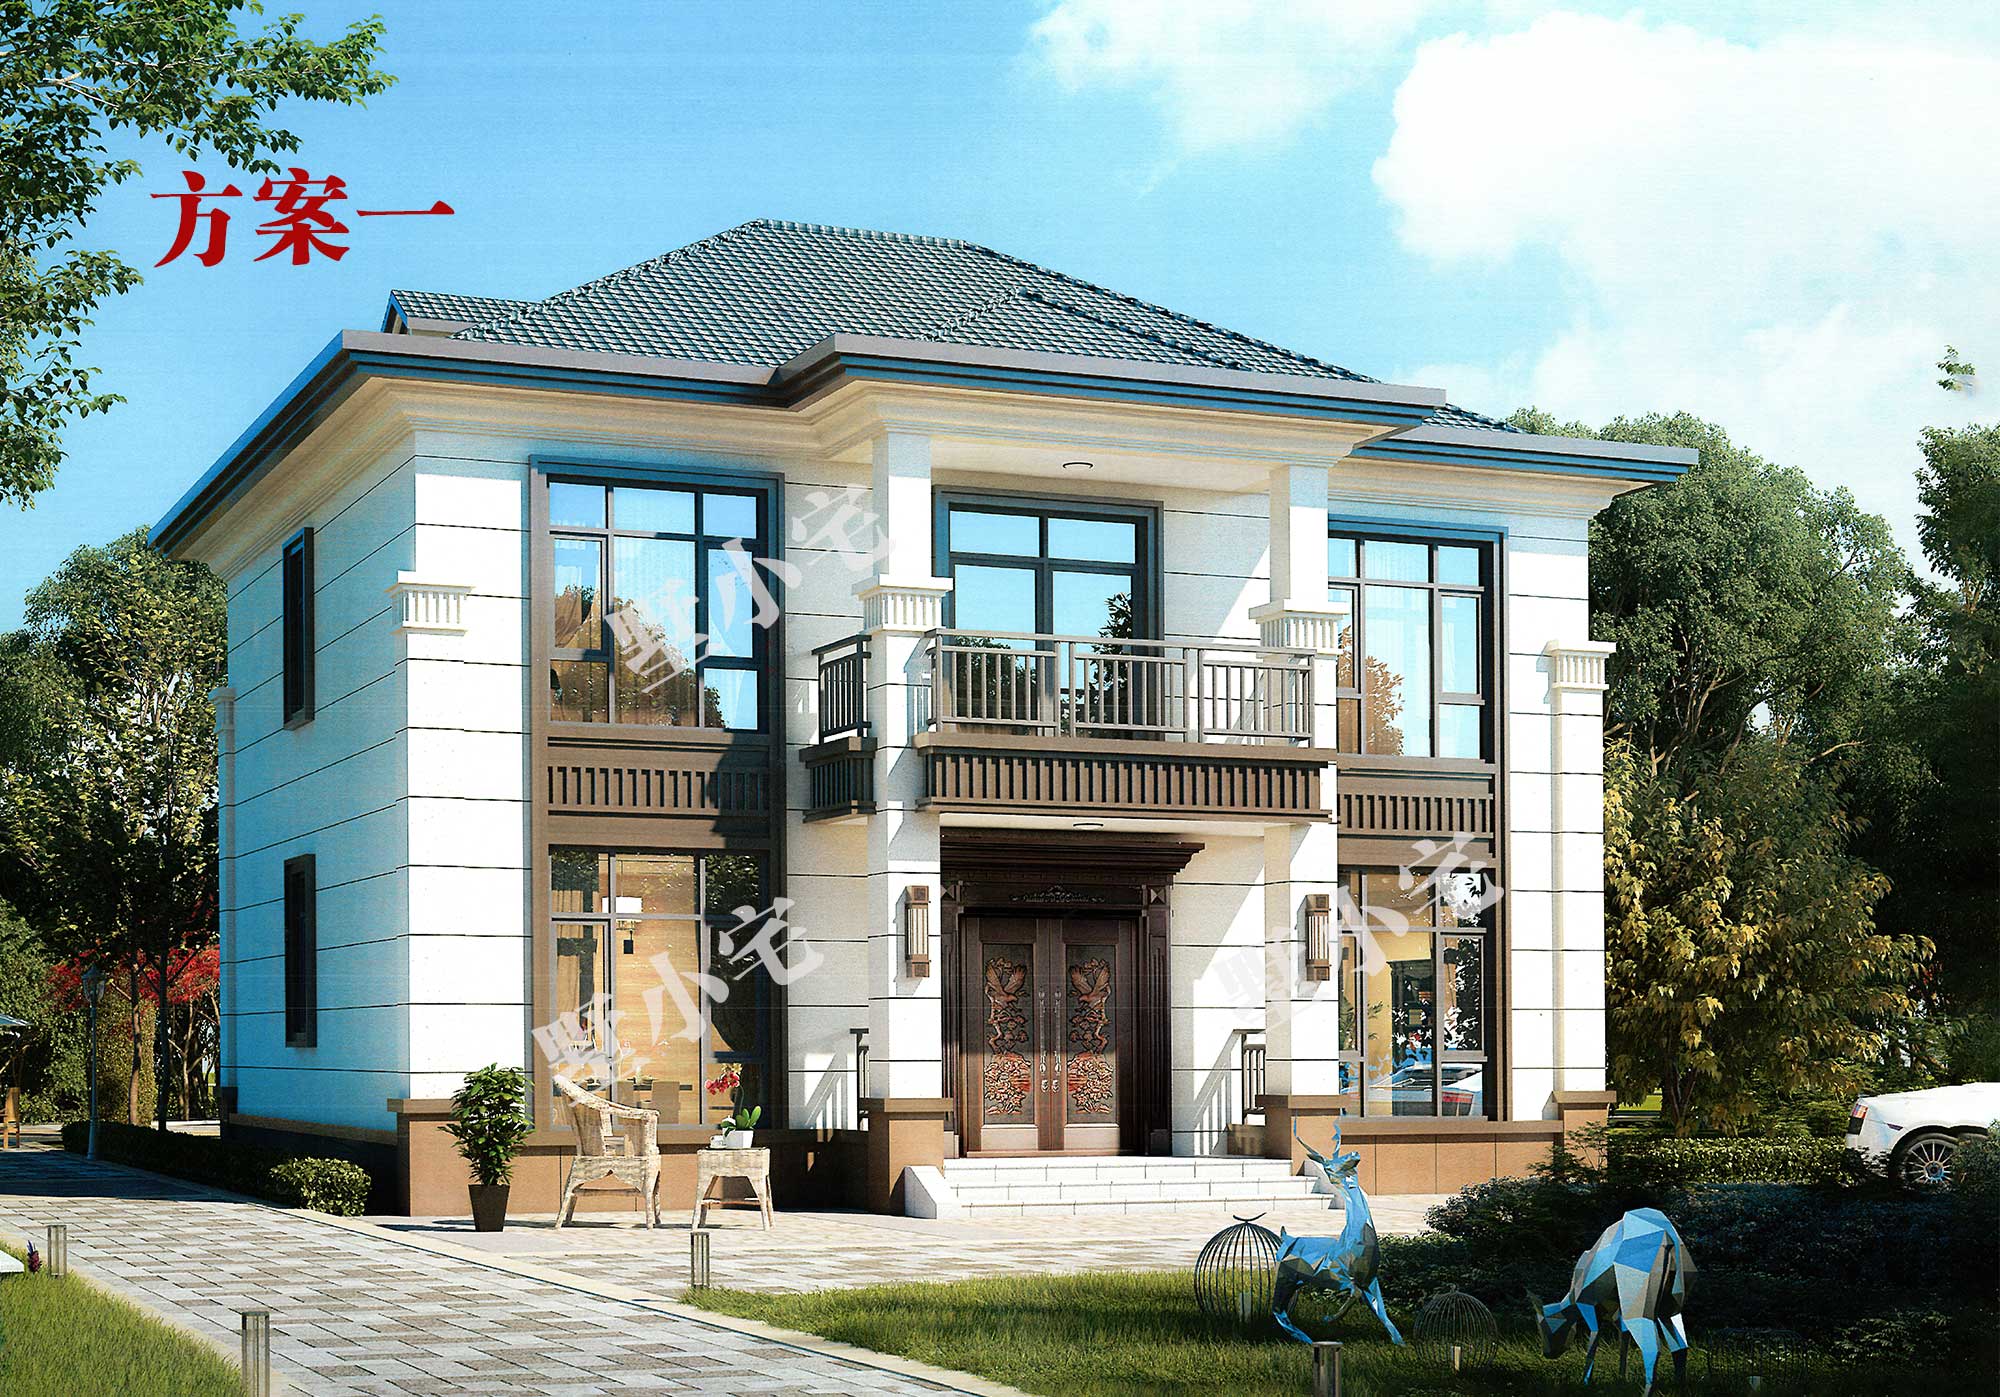 B801【最新二层新中式别墅】二层自建别墅精美小户型新中式风格多功能布局，中国人最喜欢的自建房款式